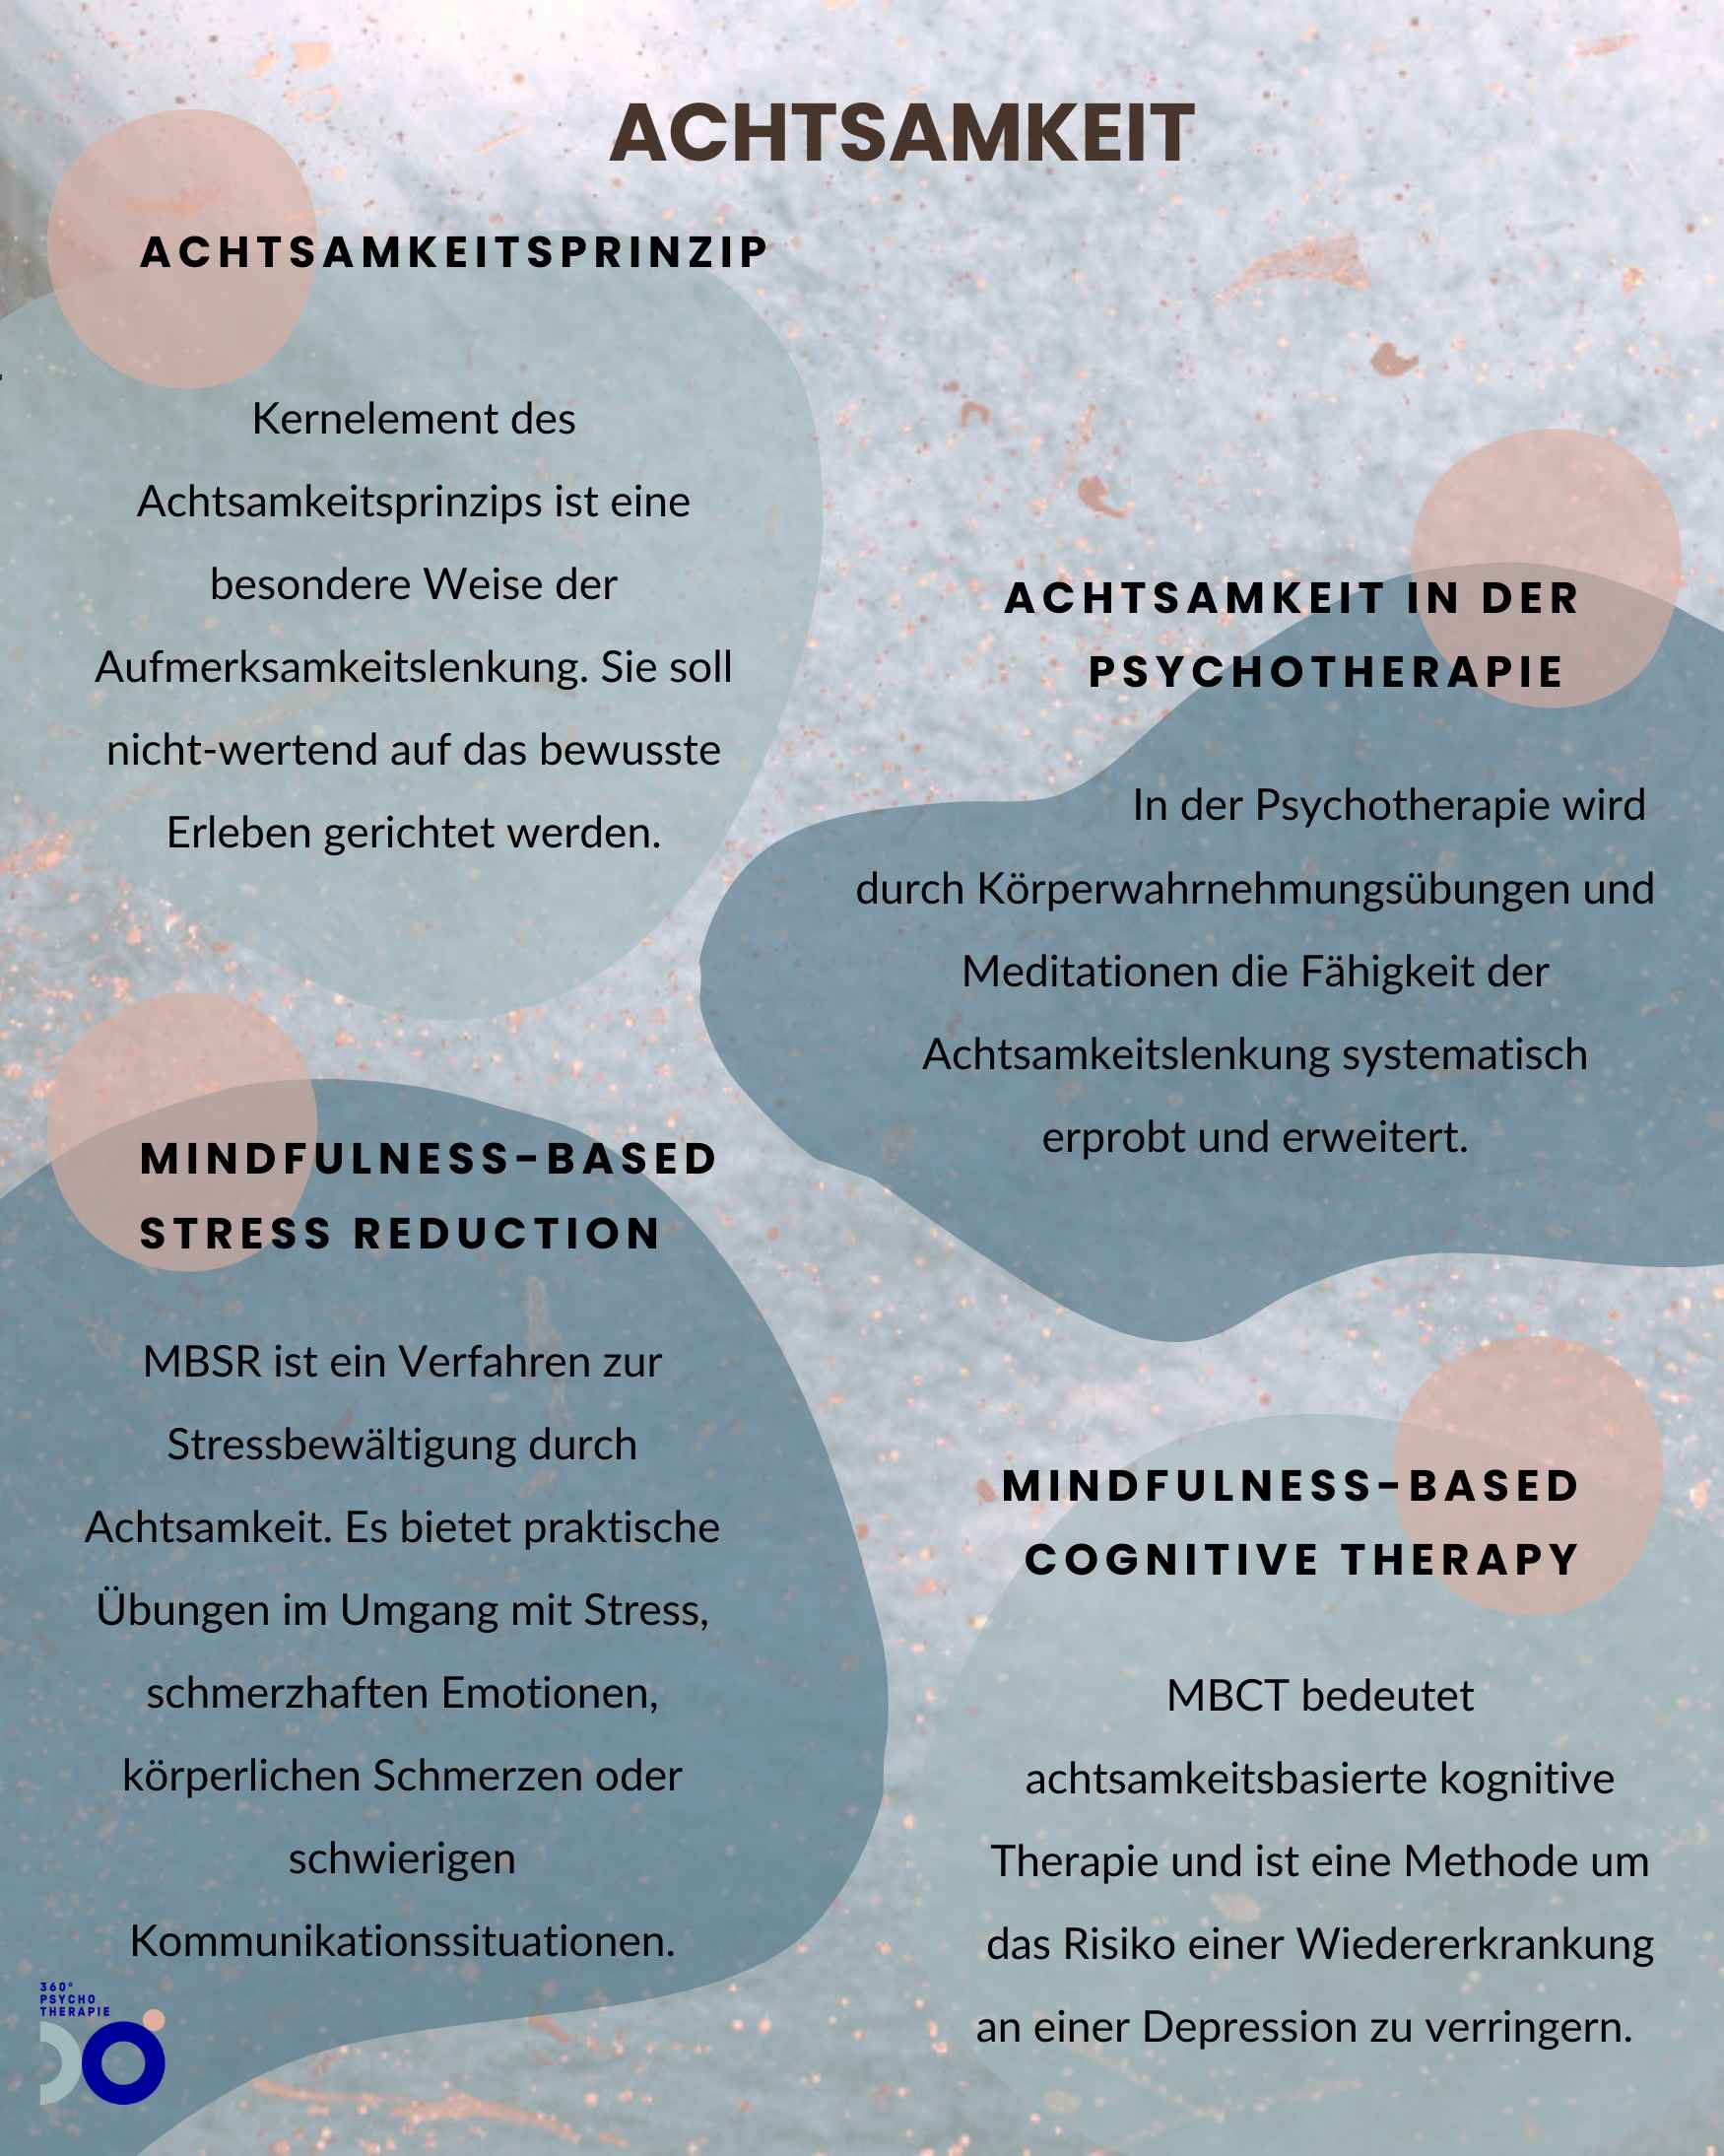 Infografik zum Thema Achtsamkeit als Teil der Psychotherapie mit Mindfulness-Based Stress Reduction.